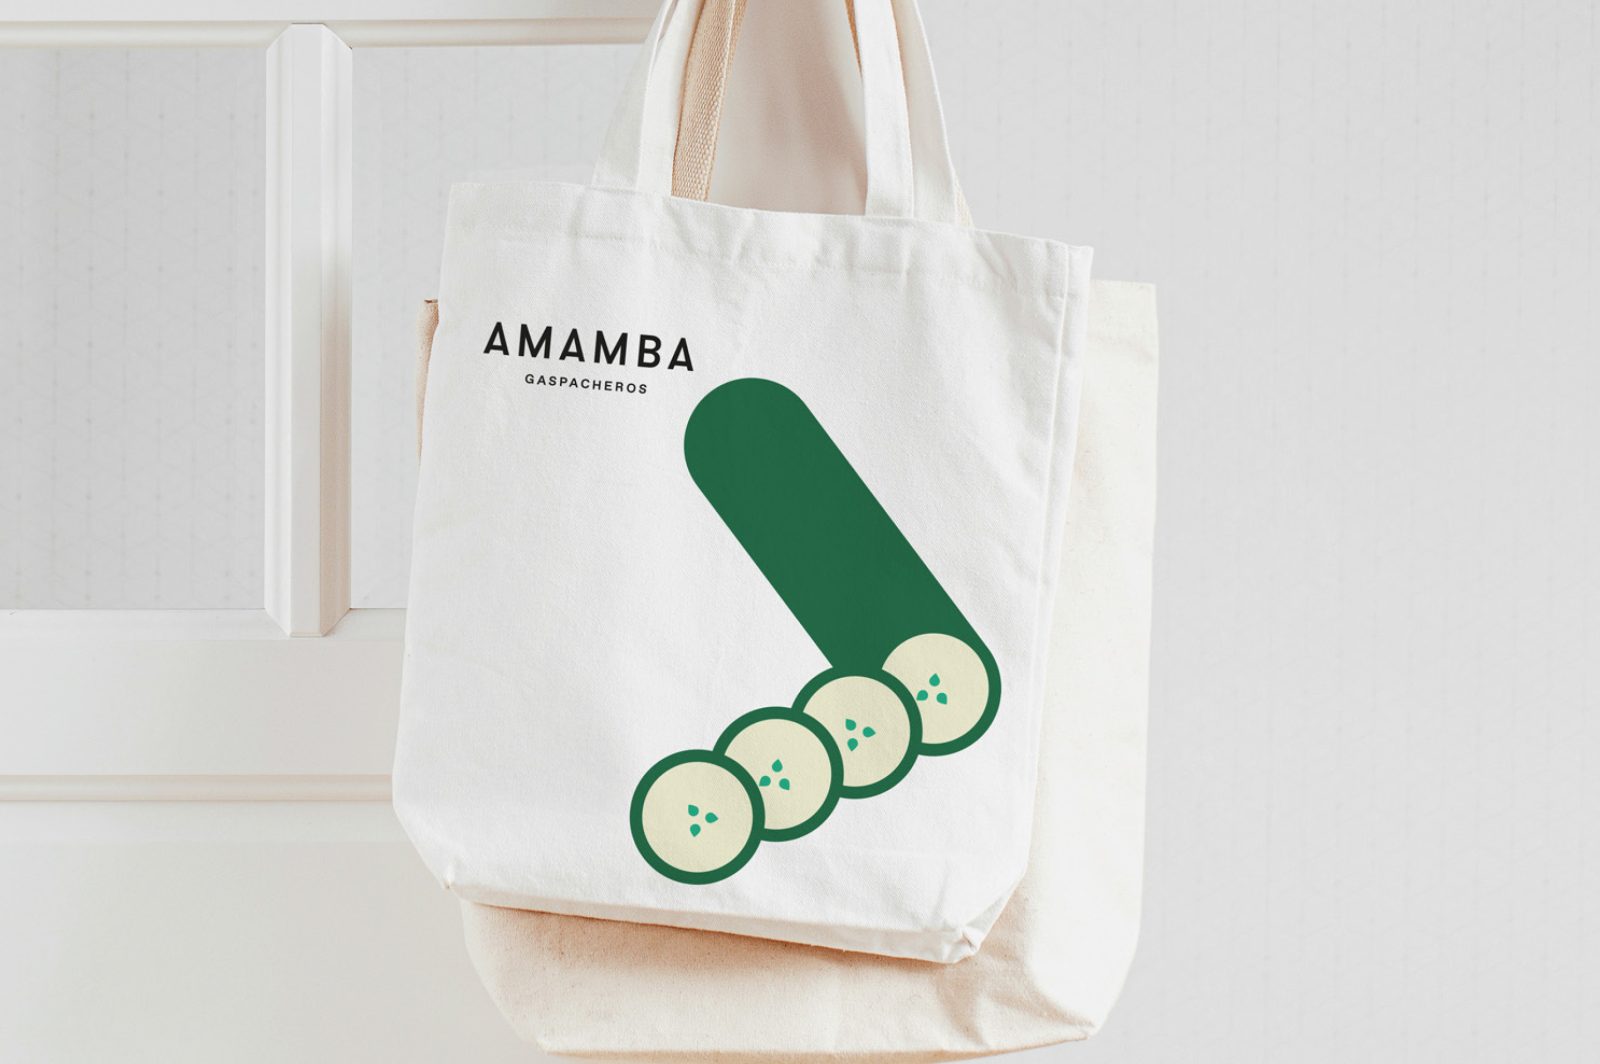 Cantera Estudio Creates Amamba Brand Design